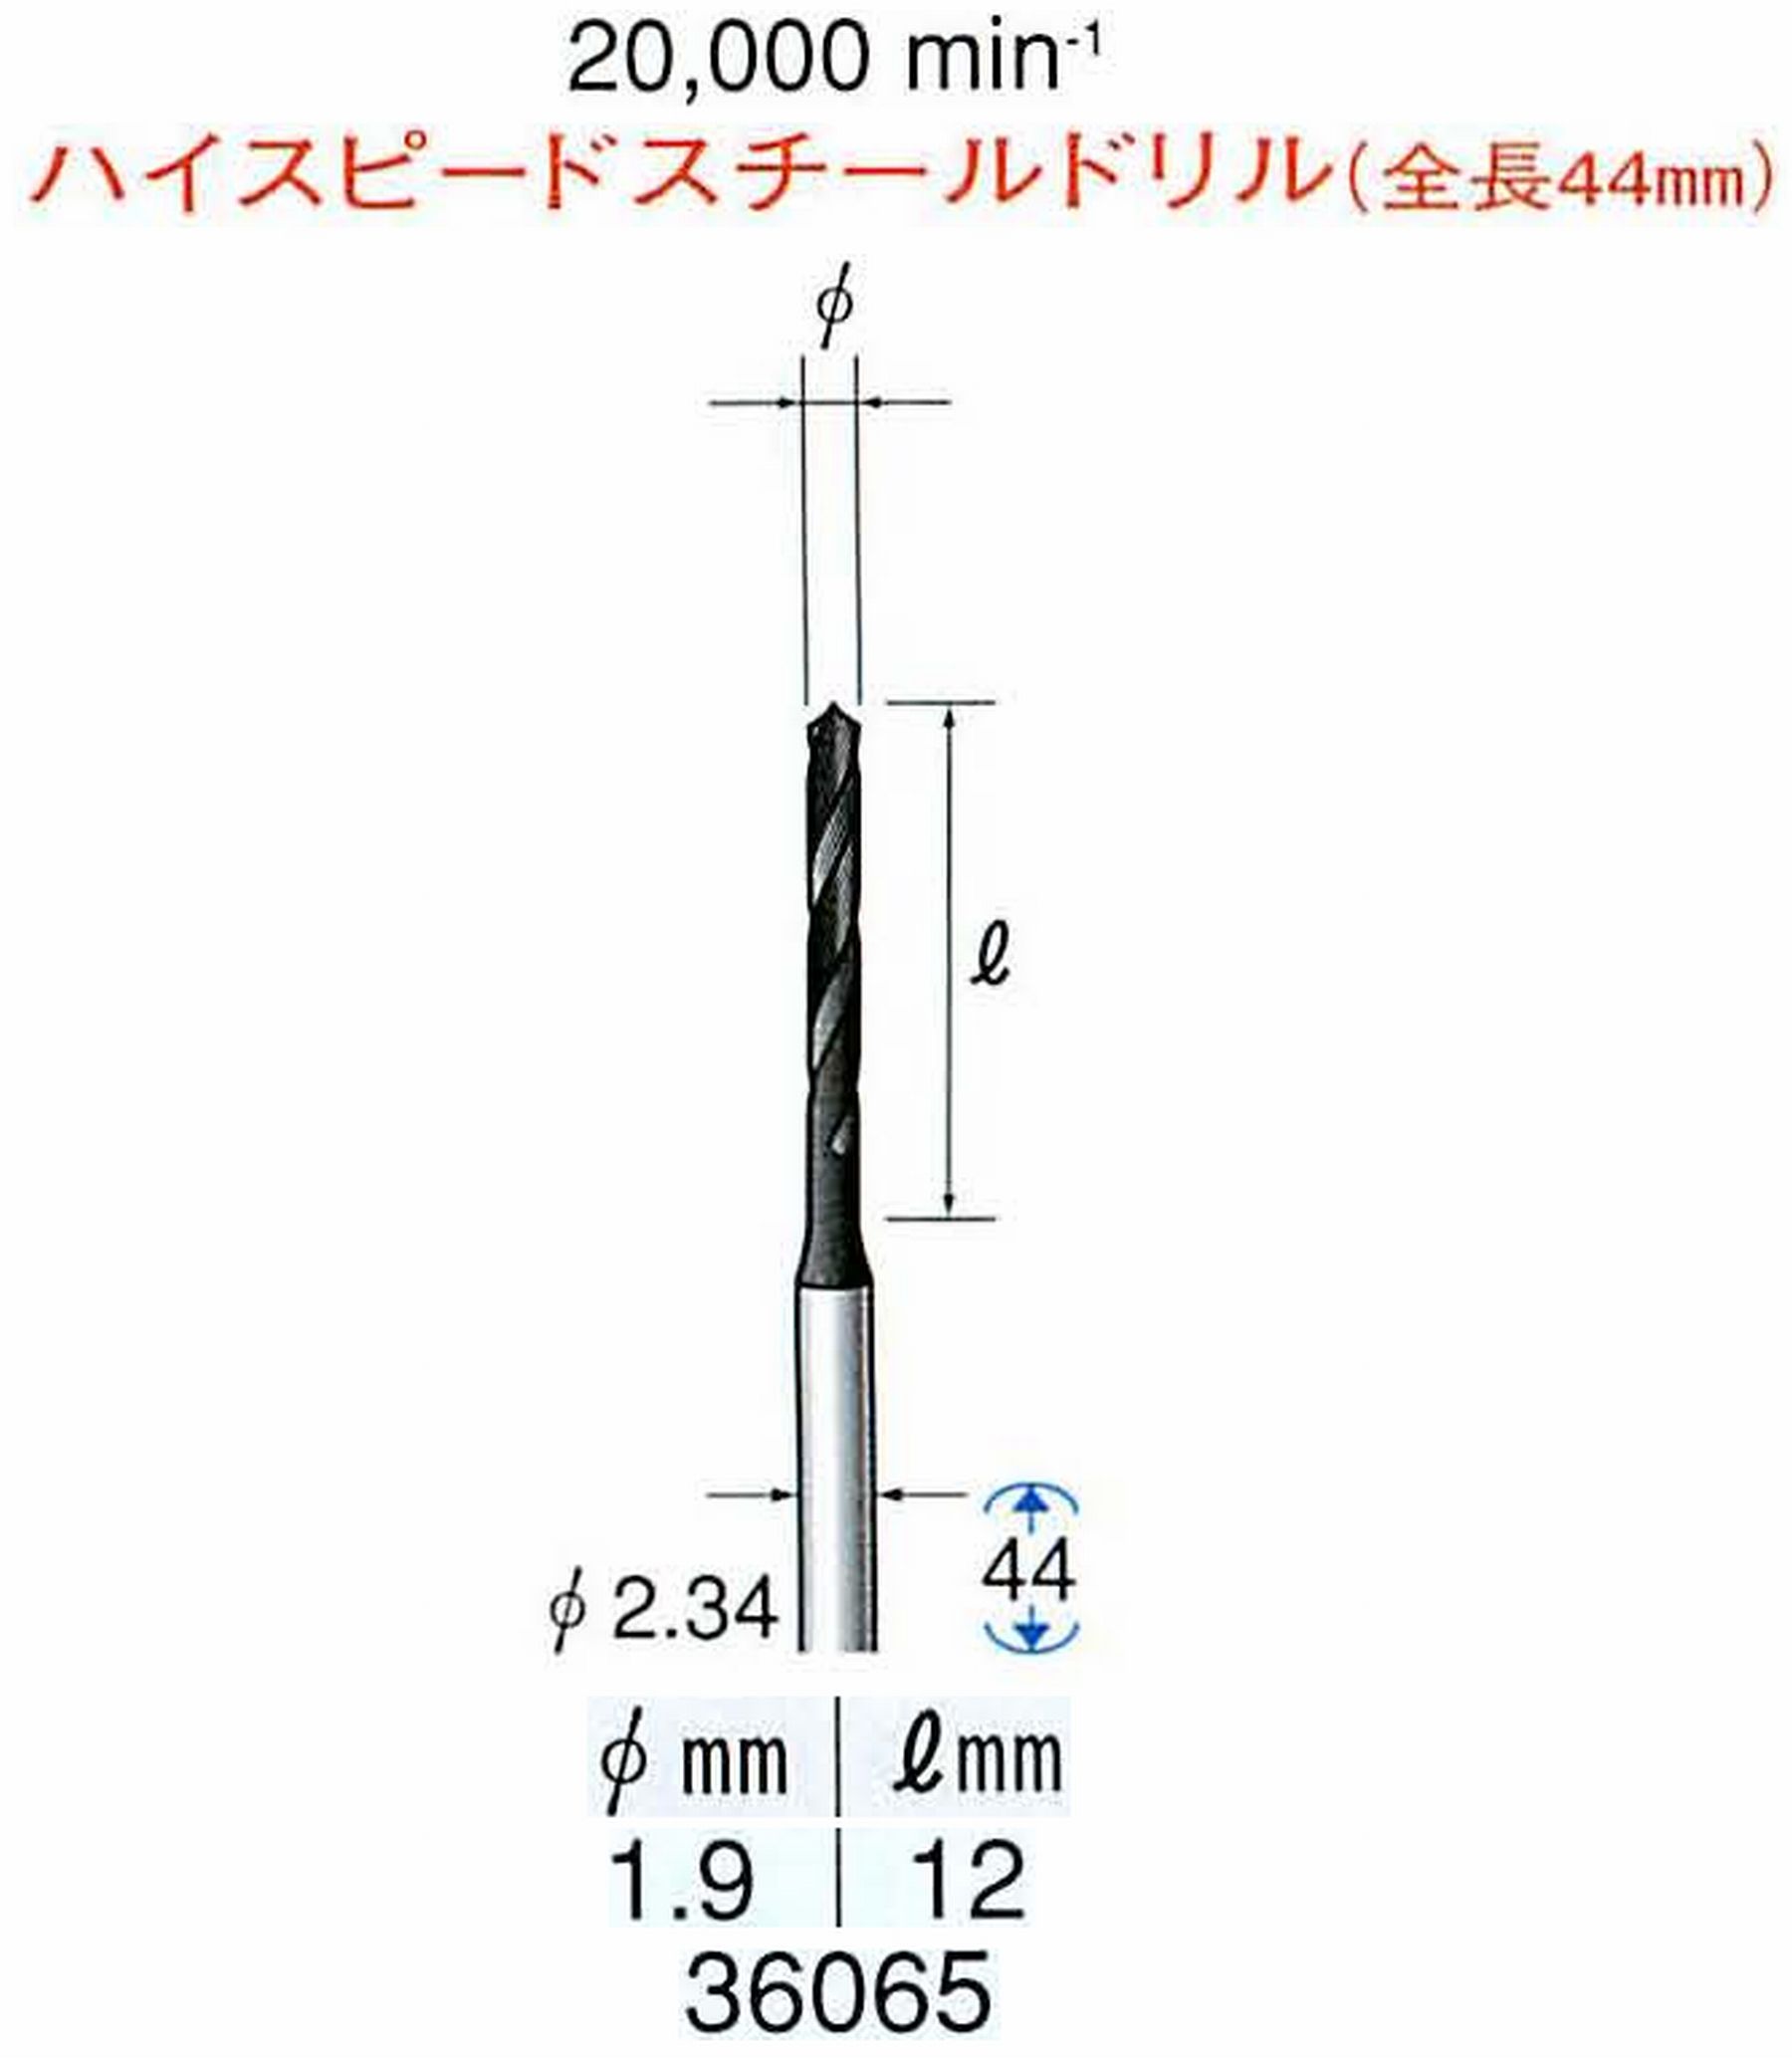 ナカニシ/NAKANISHI ツイストドリル ハイスピードスチール(H.S.S)ドリル(全長44mm) 軸径(シャンク) φ2.34mm 36065